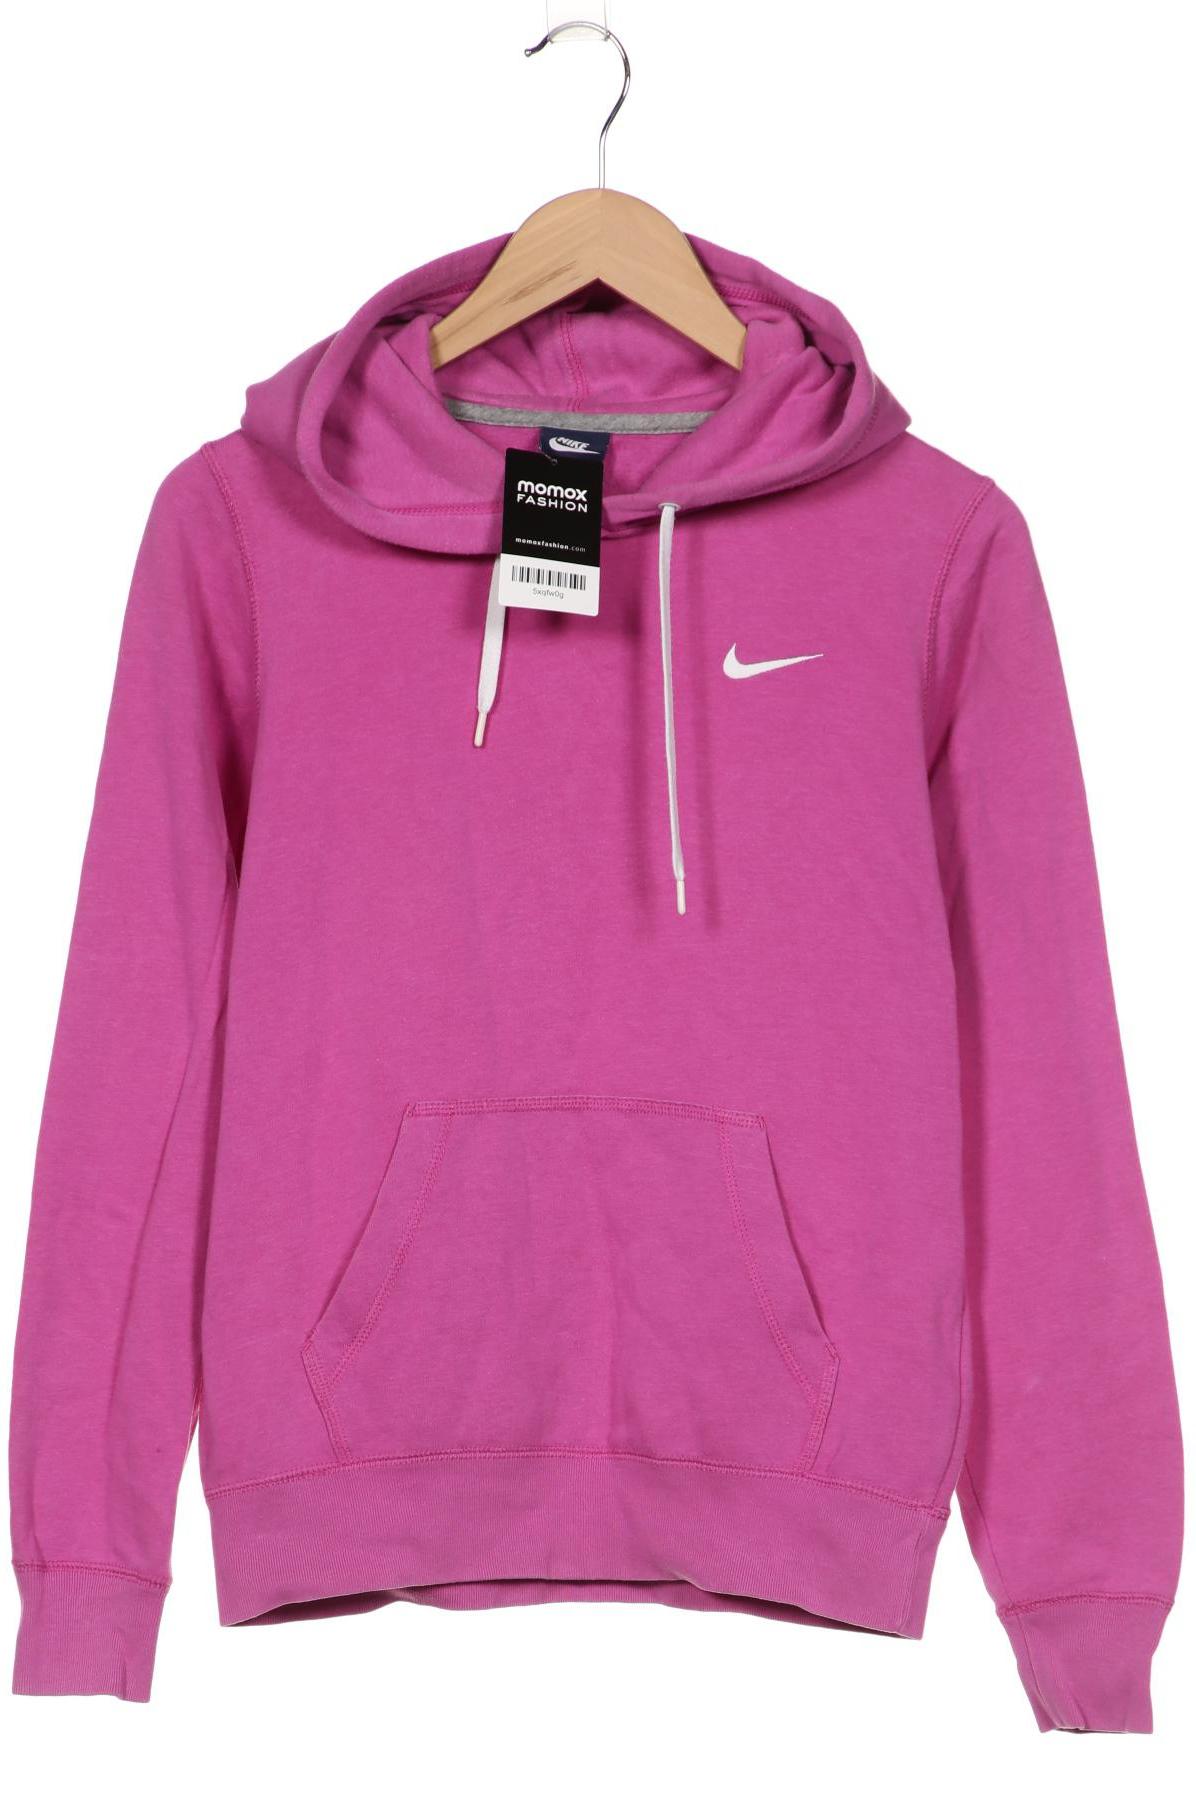 Nike Damen Kapuzenpullover, pink von Nike